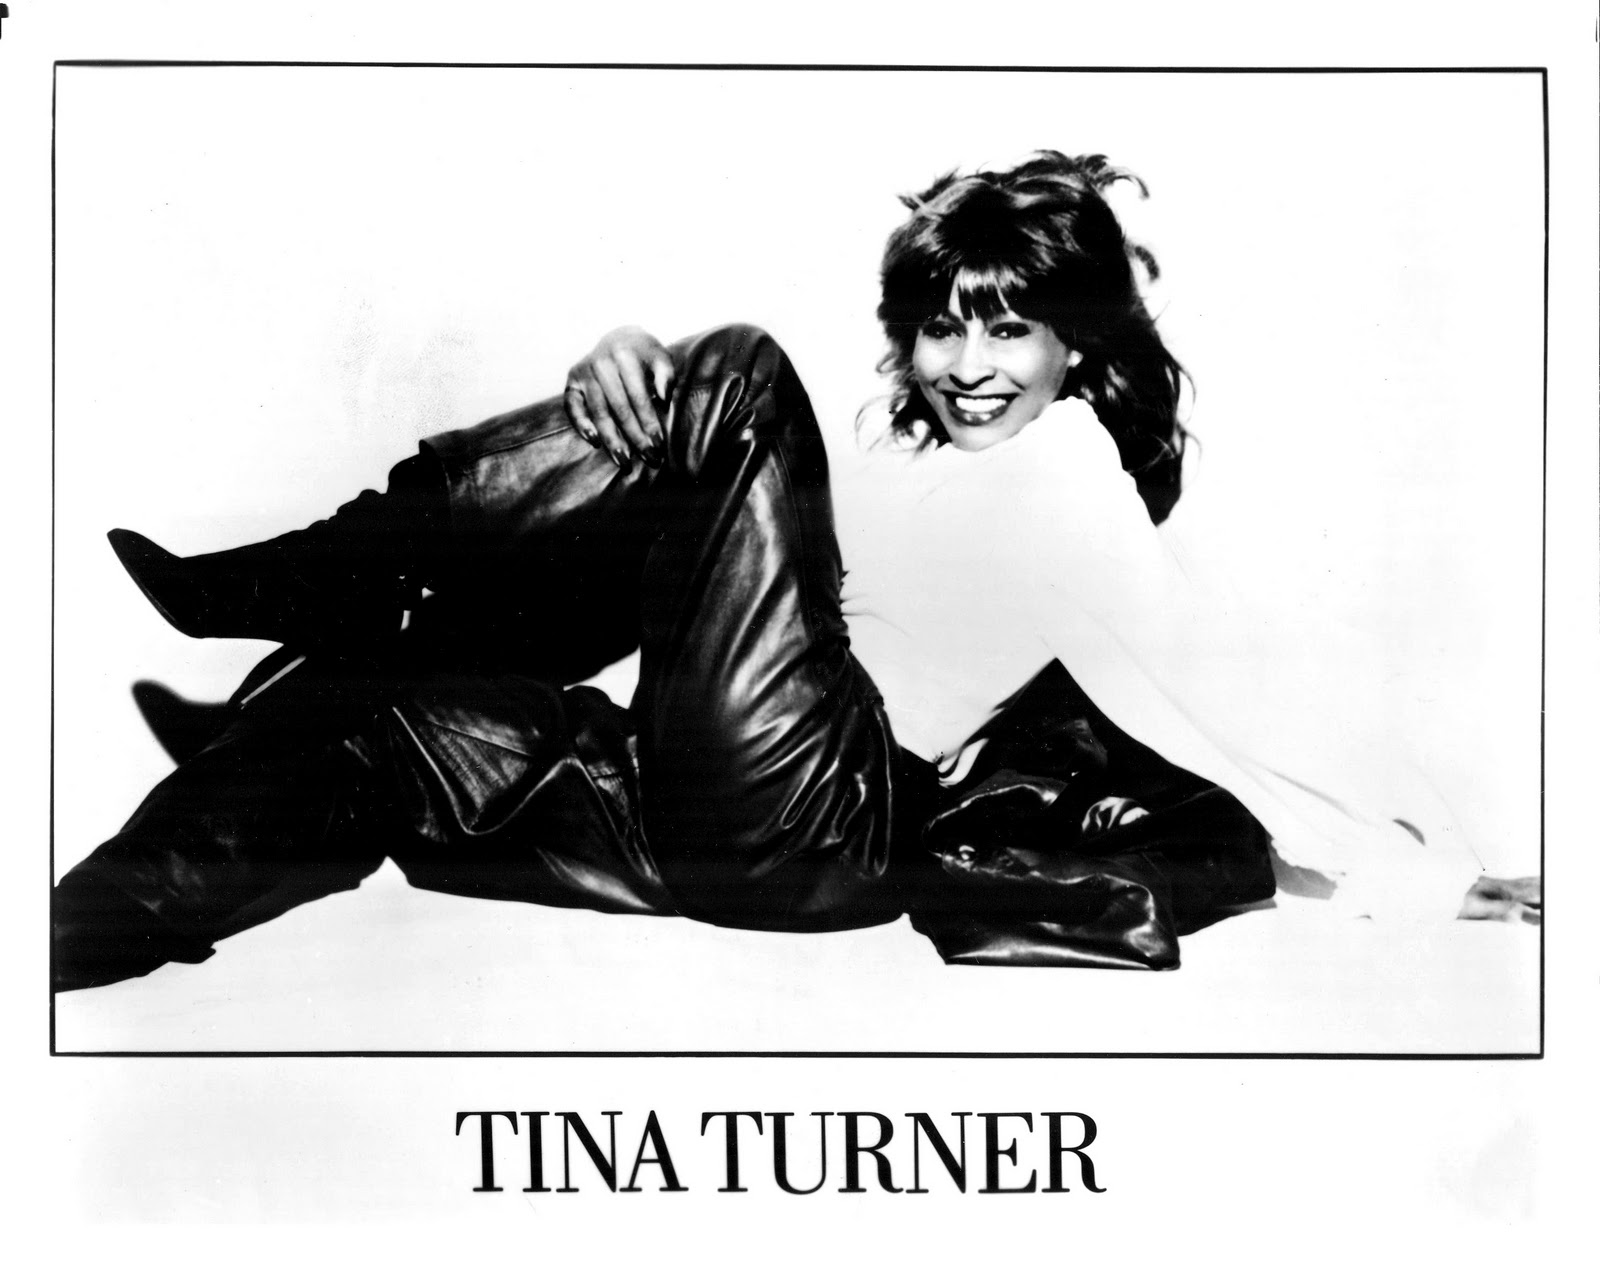 TINA TURNER Press Kits.